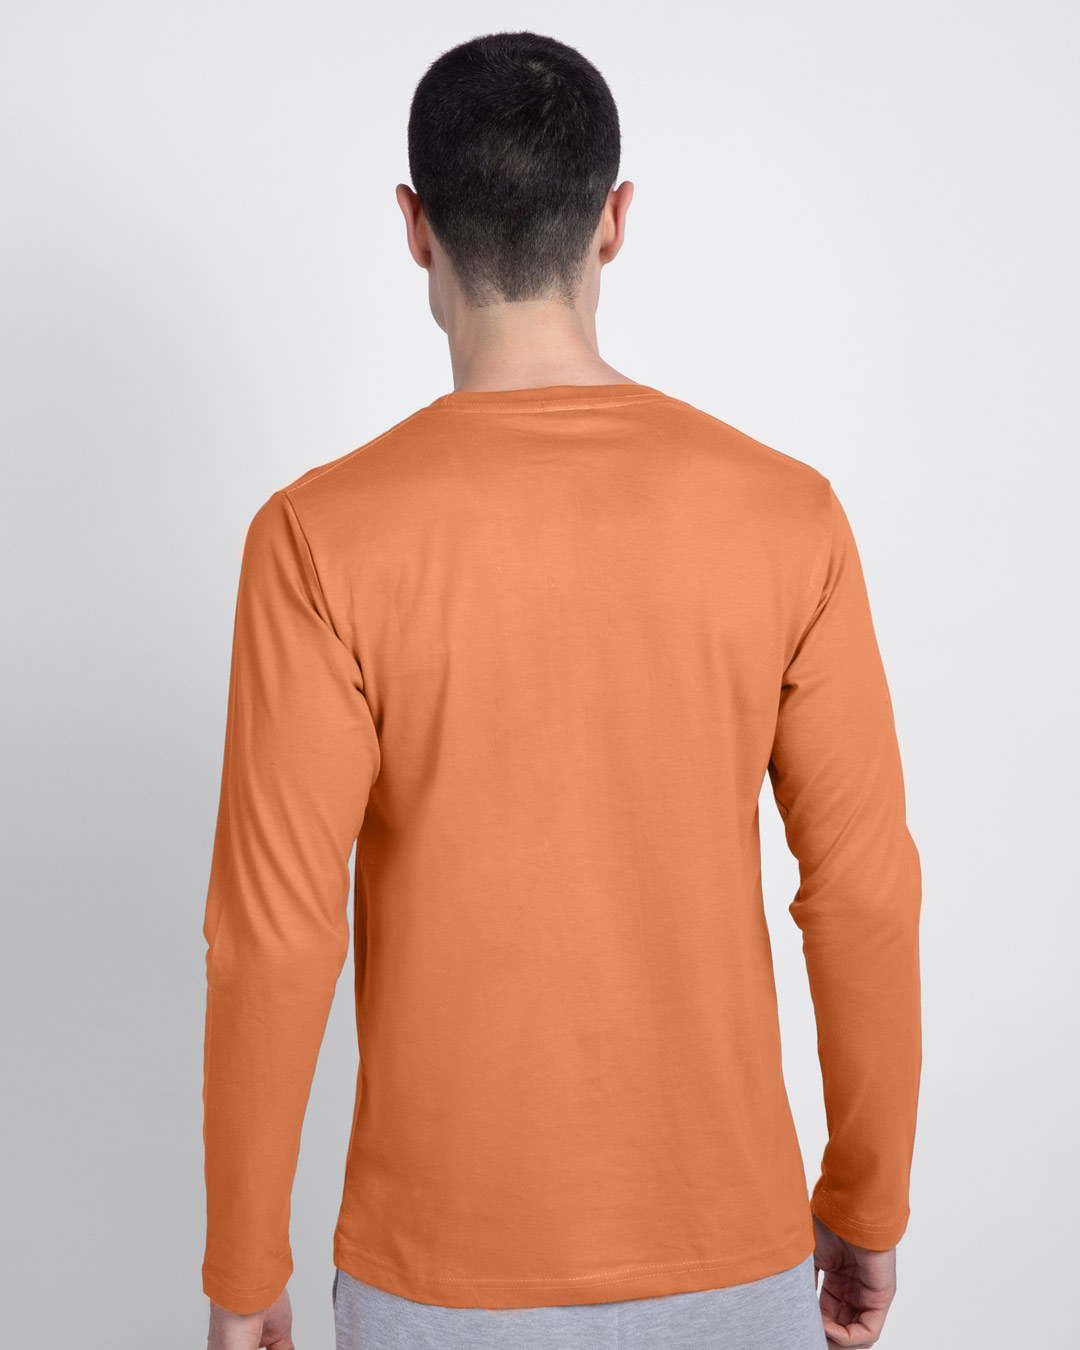 Shop Sadda Pain Full Sleeve T-Shirt Vintage Orange-Back